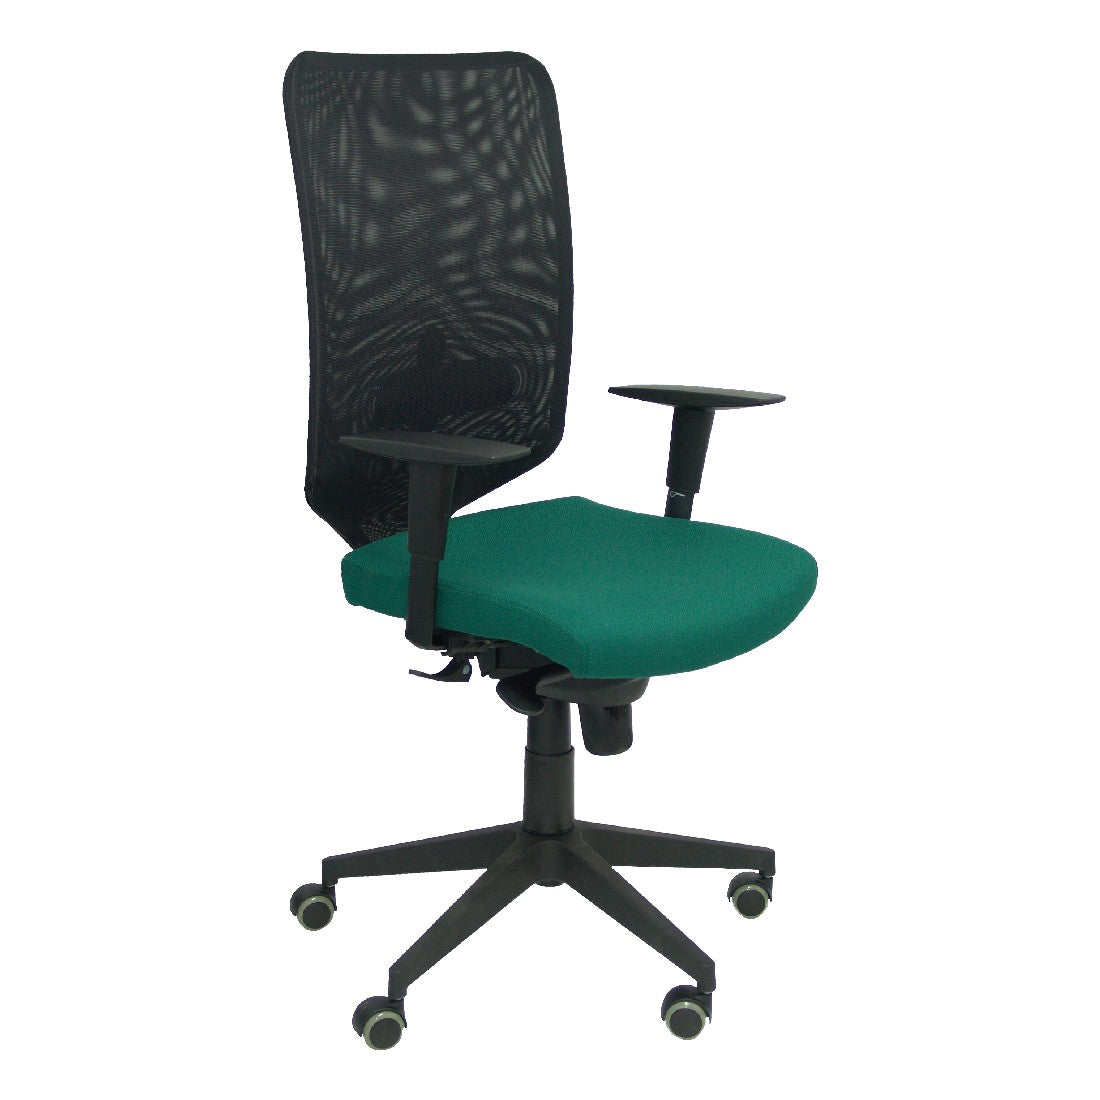 Chaise de bureau Ossa noir P&C BALI426 Vert. Dakar - SENEGAL